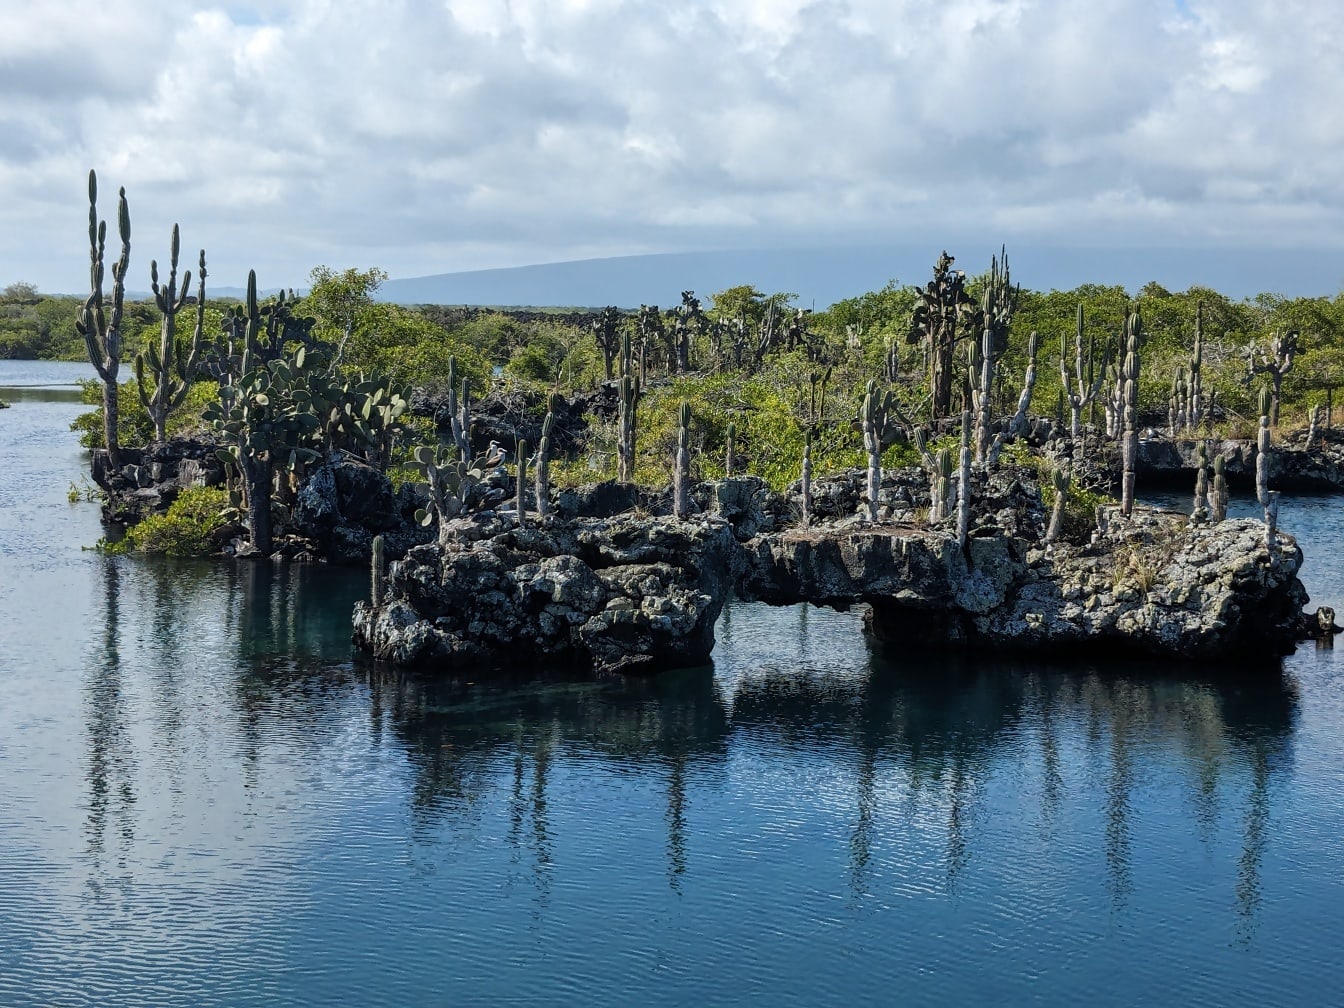 Wybrzeże wyspy Galapagos z endemicznymi gatunkami kaktusów (Opuntia galapageias)